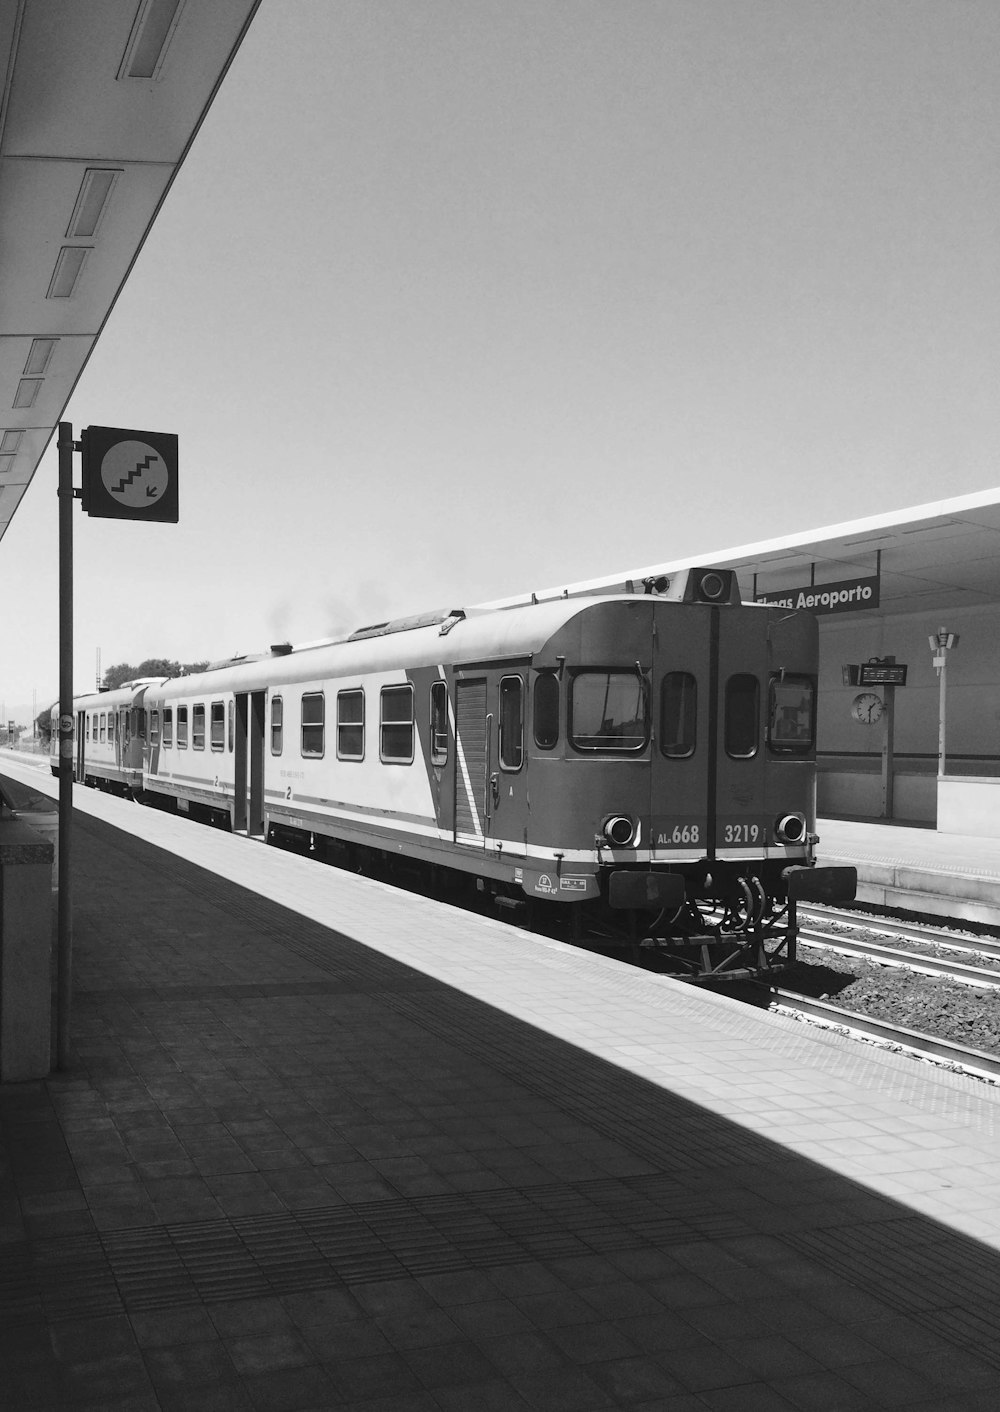 Photographie en niveaux de gris d’un train en gare